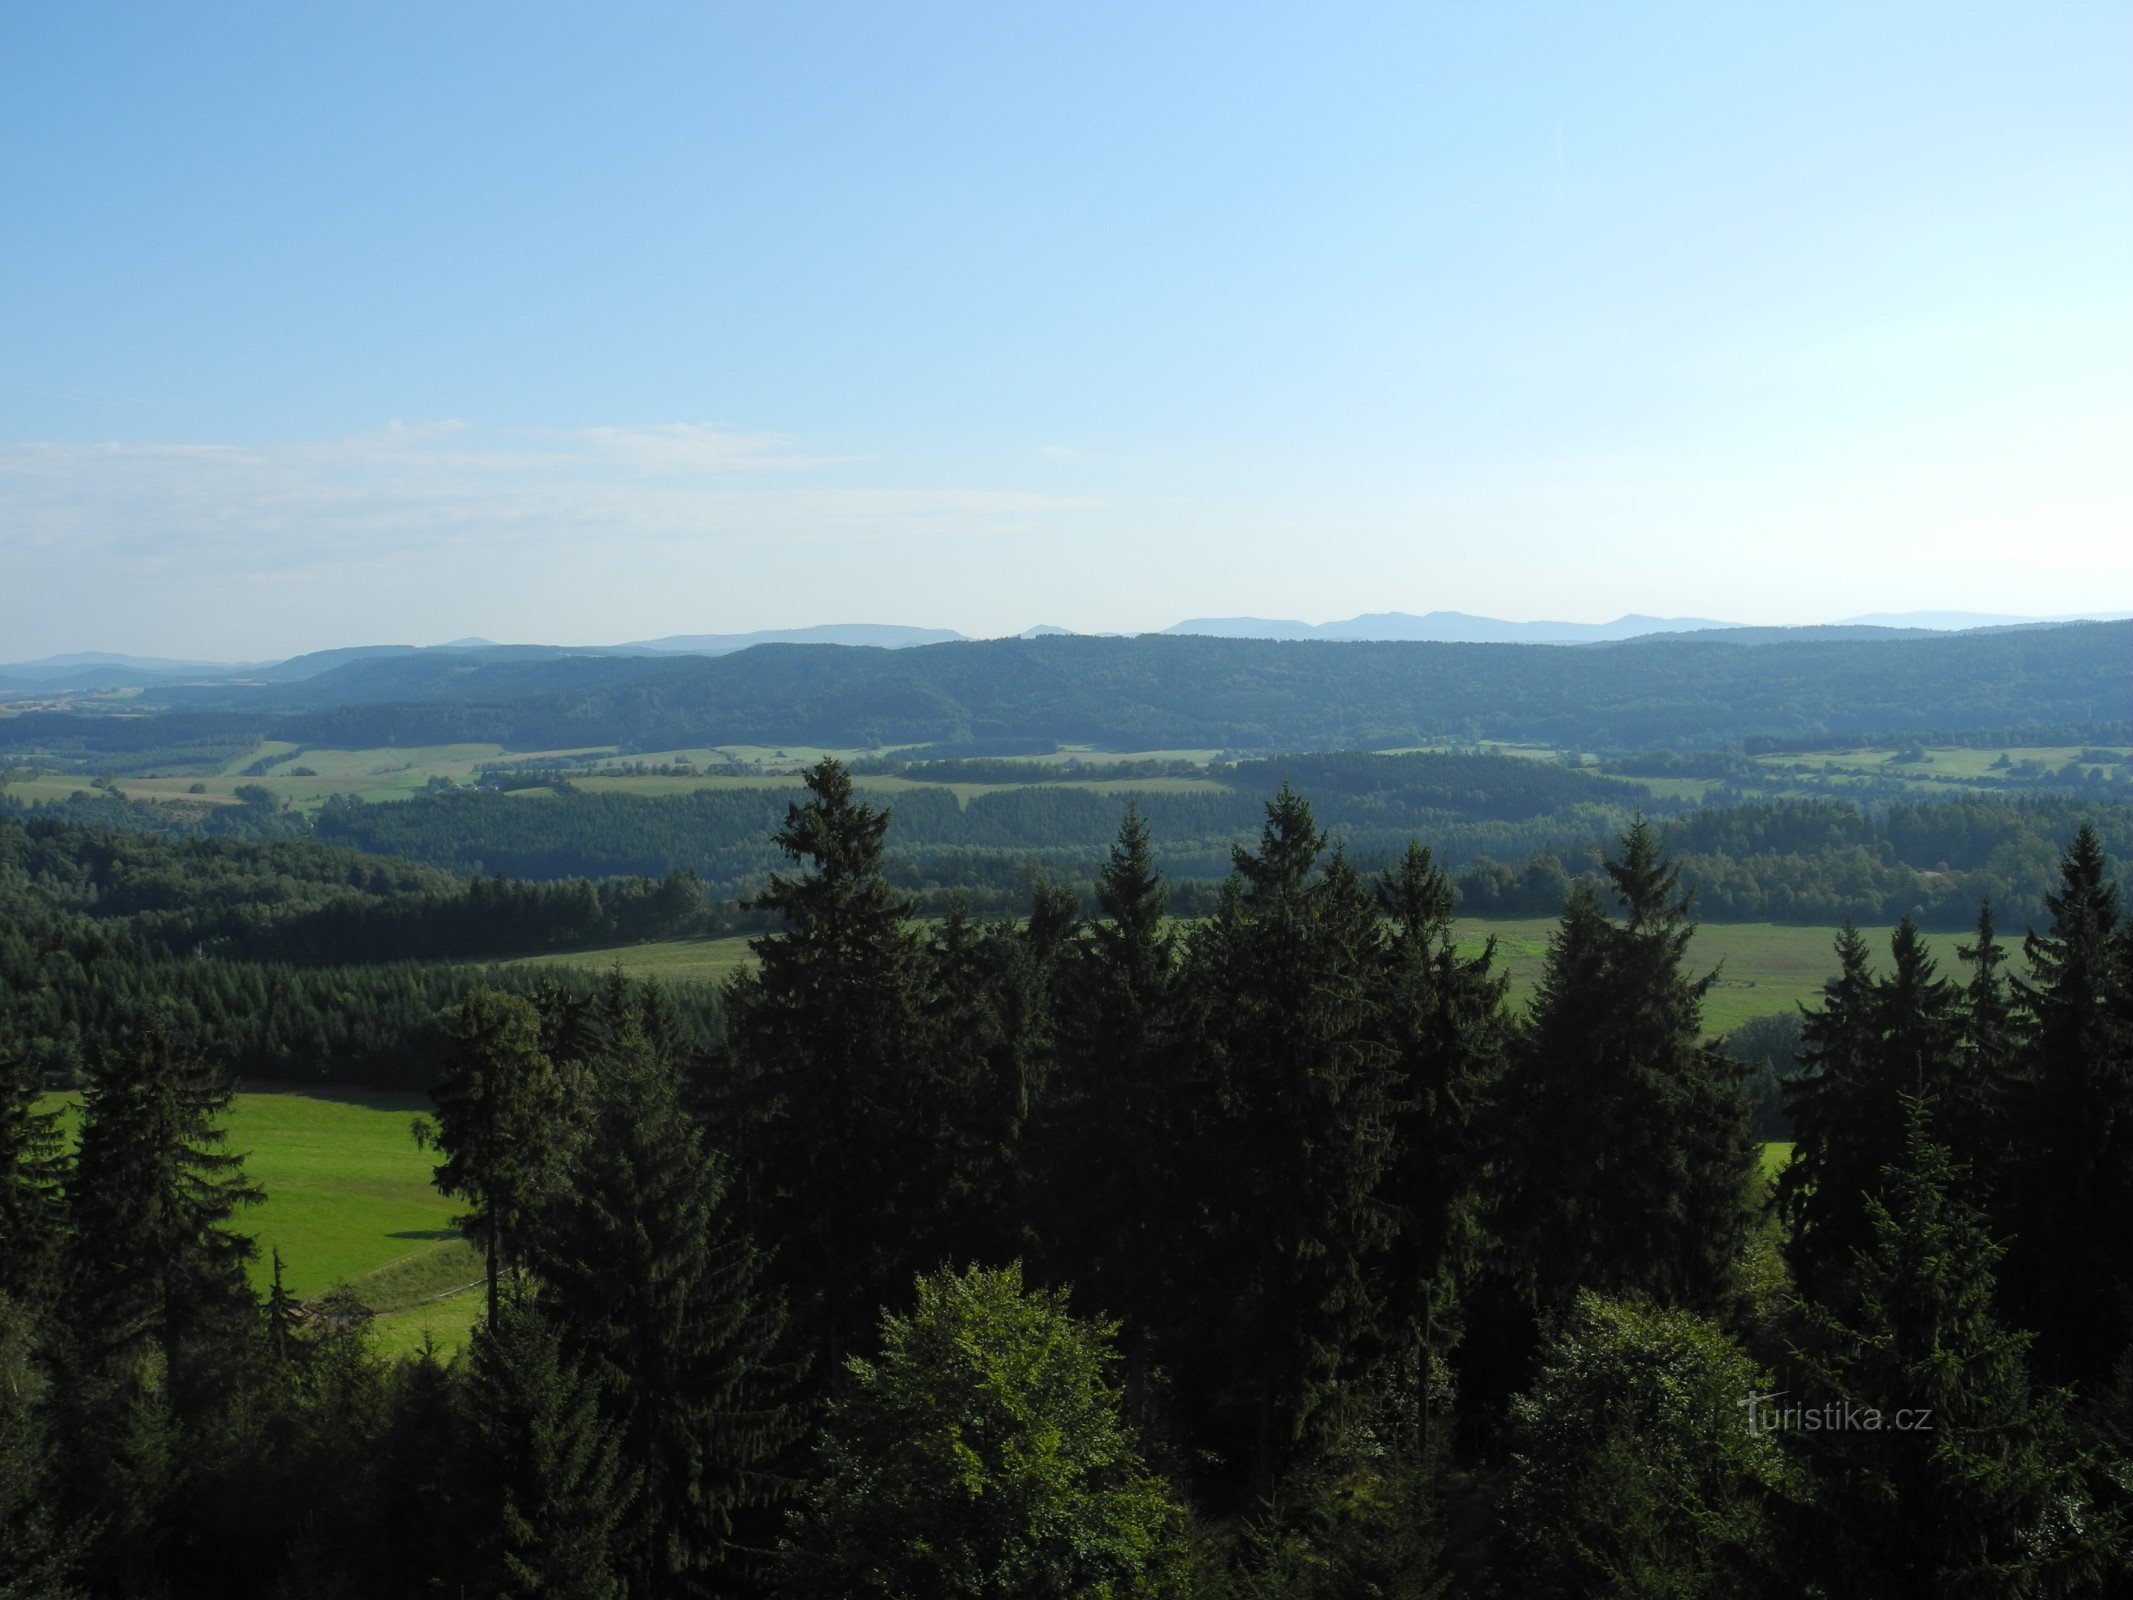 As montanhas Jestřebí atraem novos visitantes para viagens